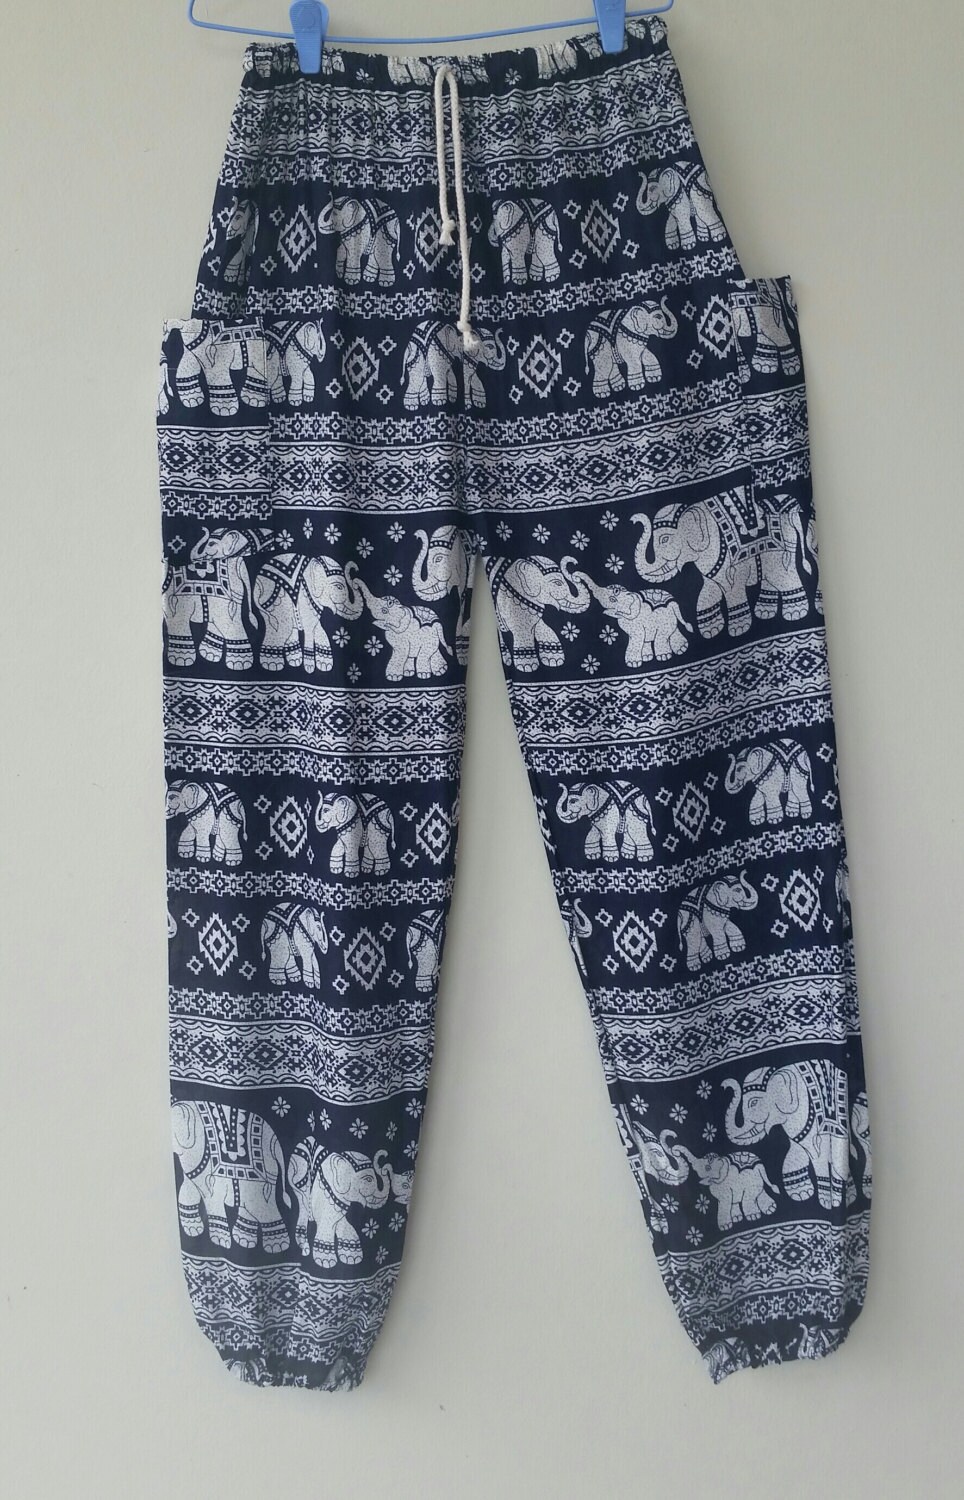 Elephant print pants Elastic waist Boho Harem by MaliChaco